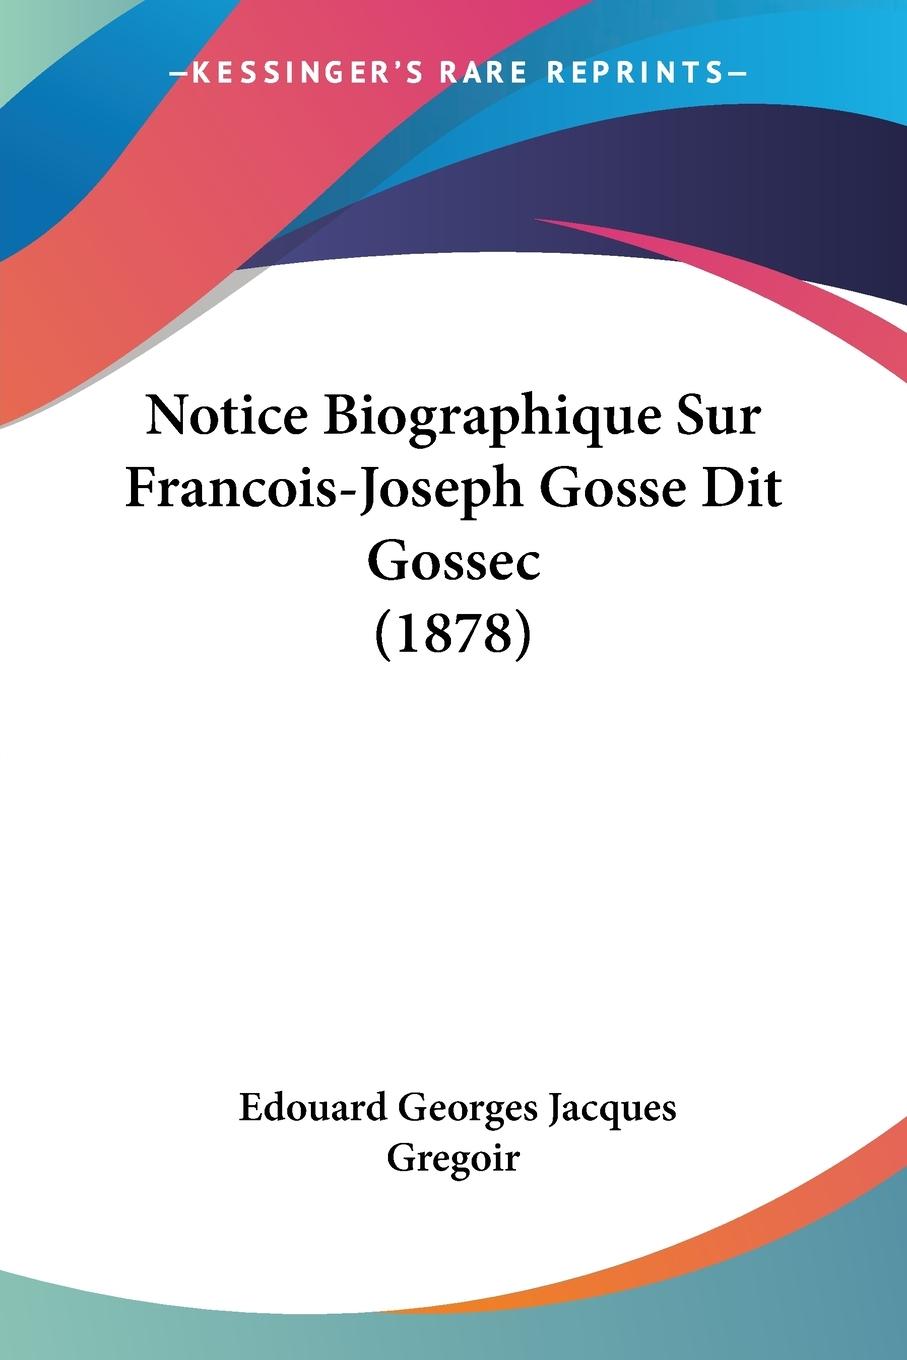 Notice Biographique Sur Francois-Joseph Gosse Dit Gossec (1878) - Gregoir, Edouard Georges Jacques